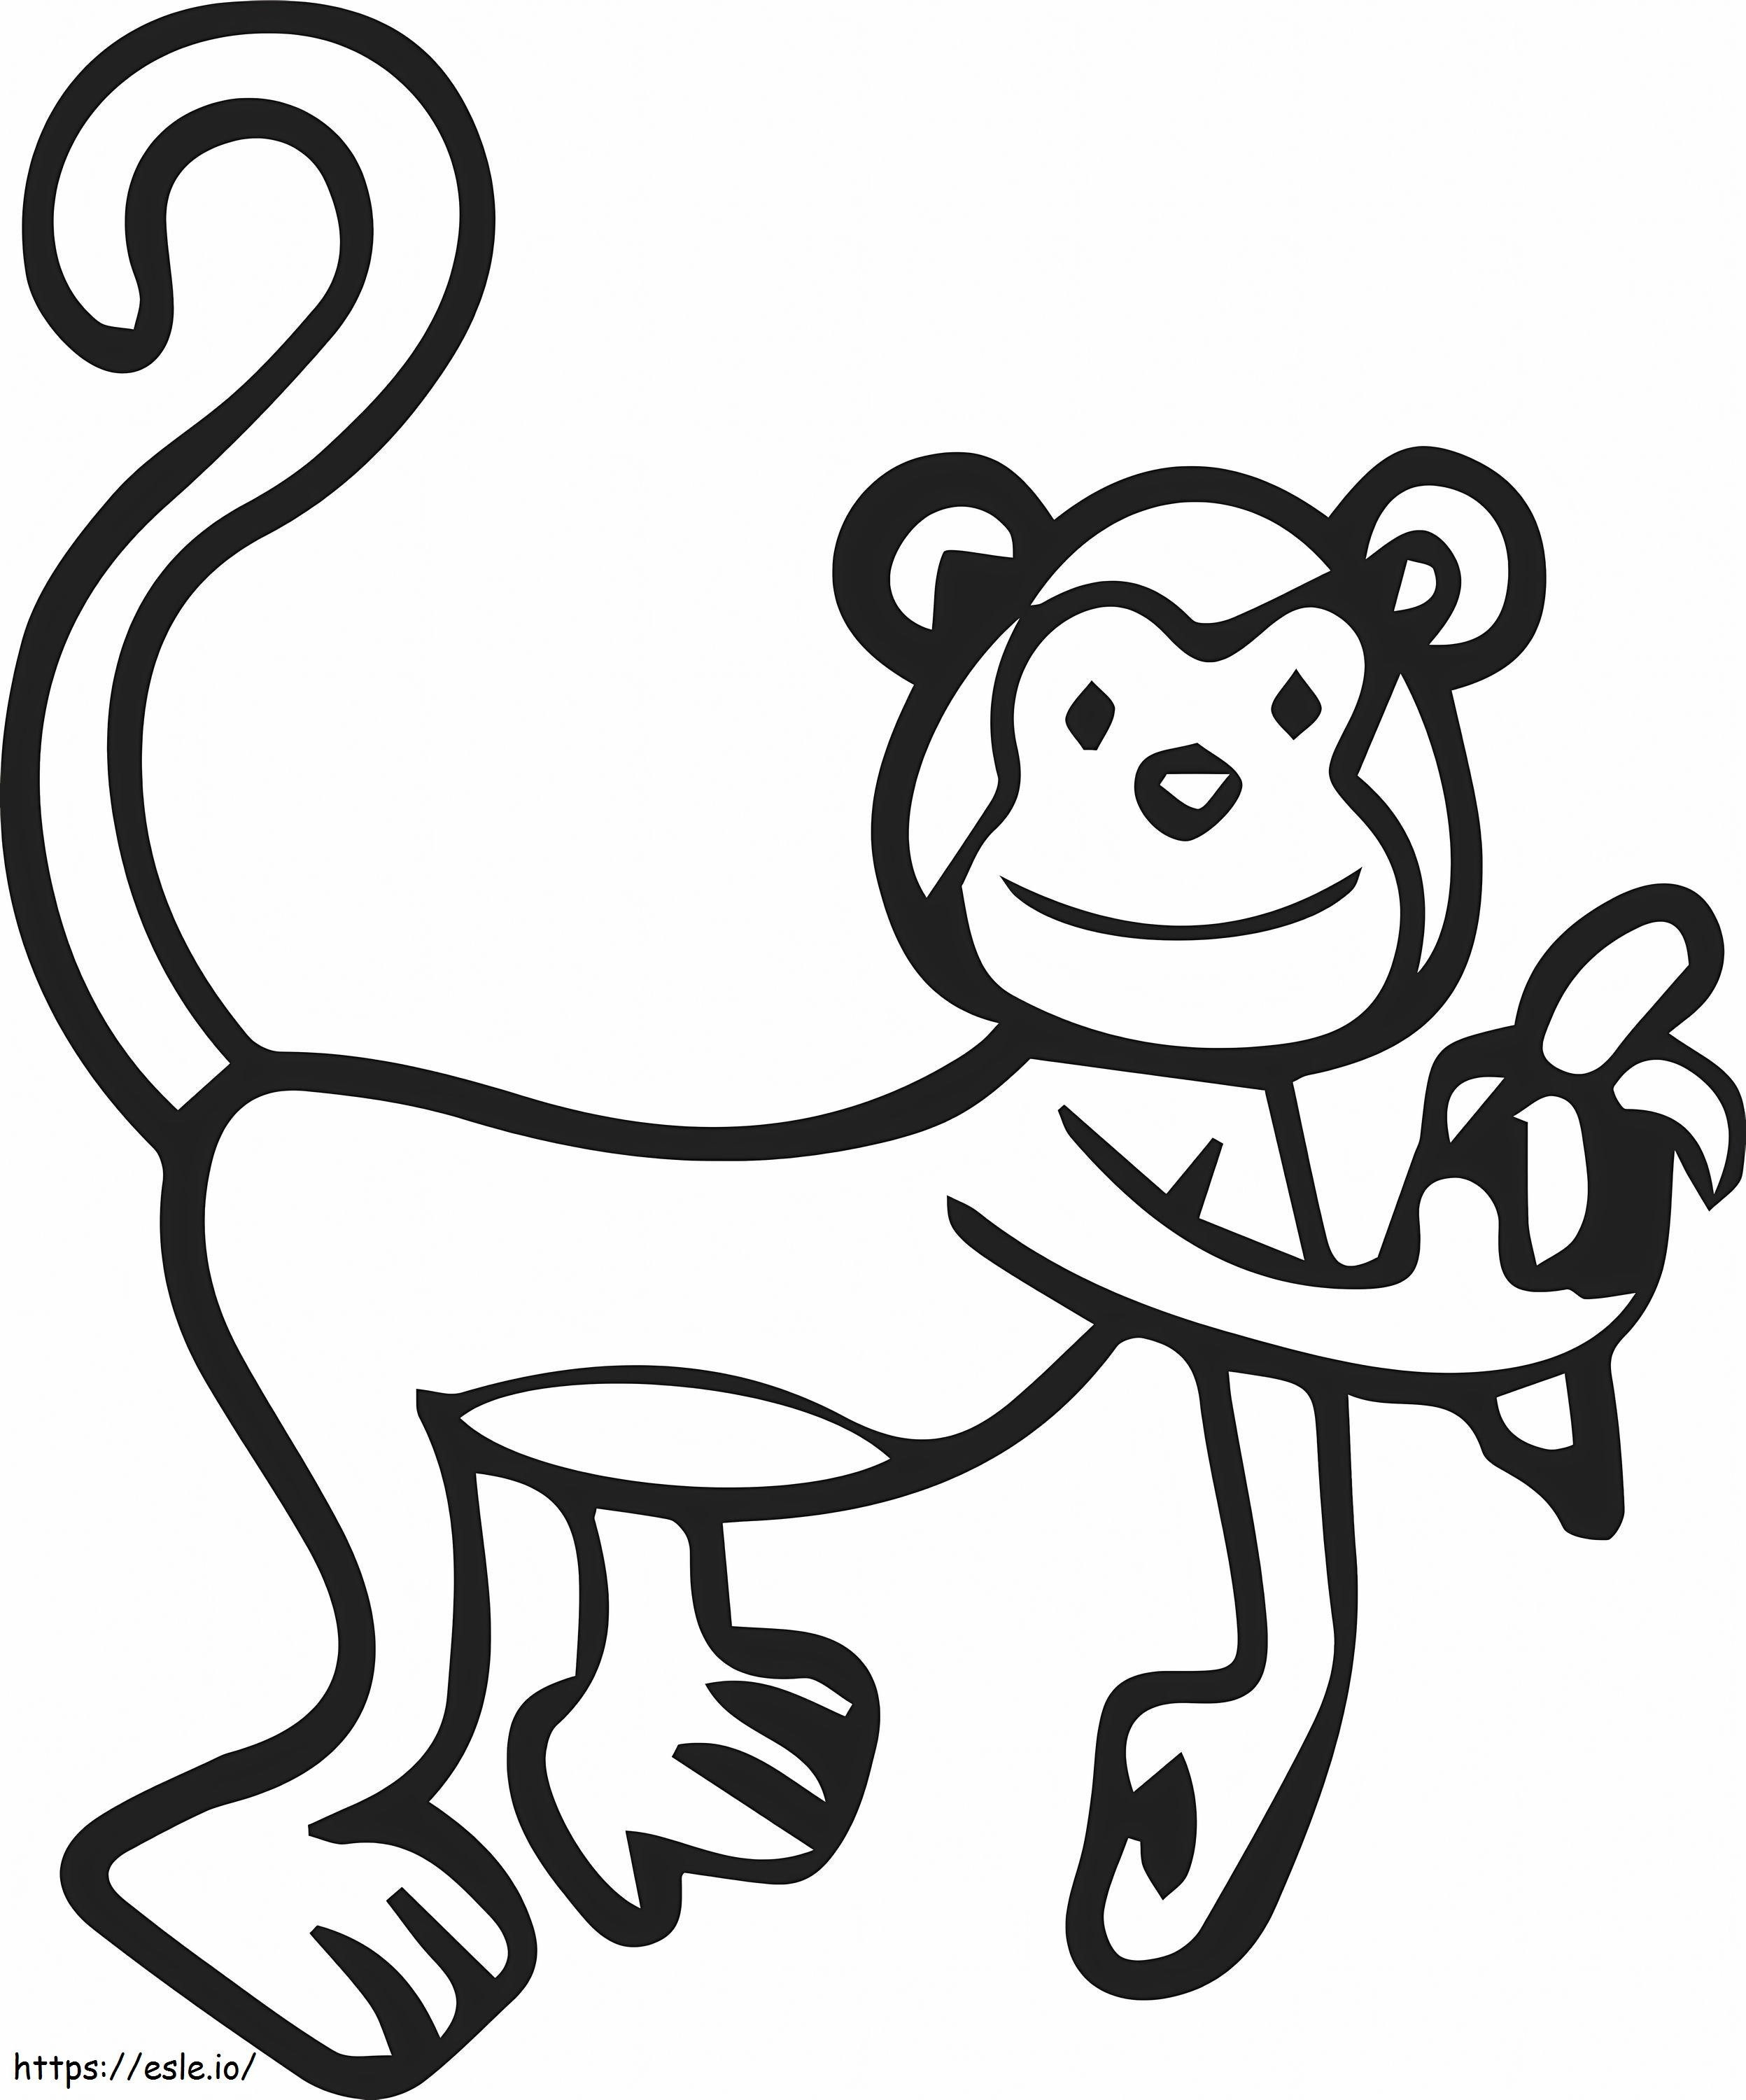 Scimmia di disegno di base da colorare